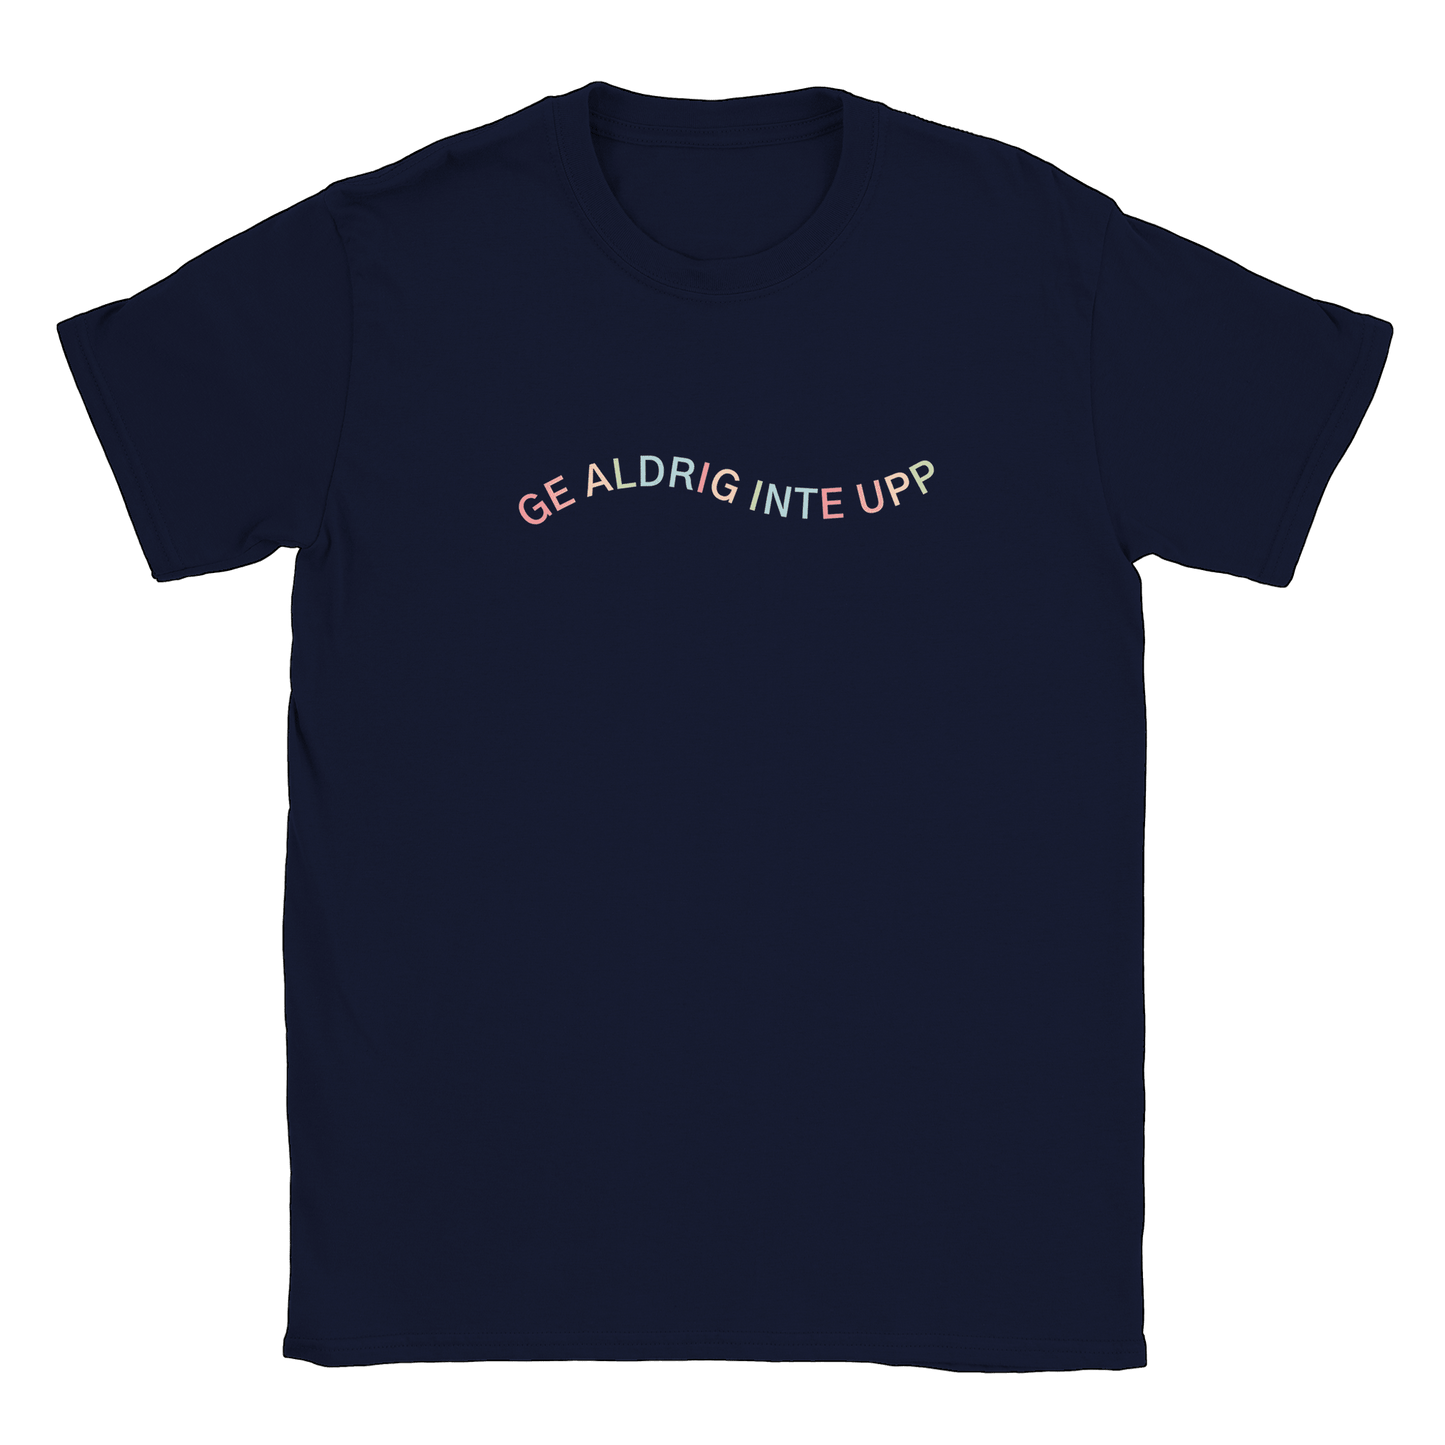 Ge aldrig inte upp - T-shirt Navy